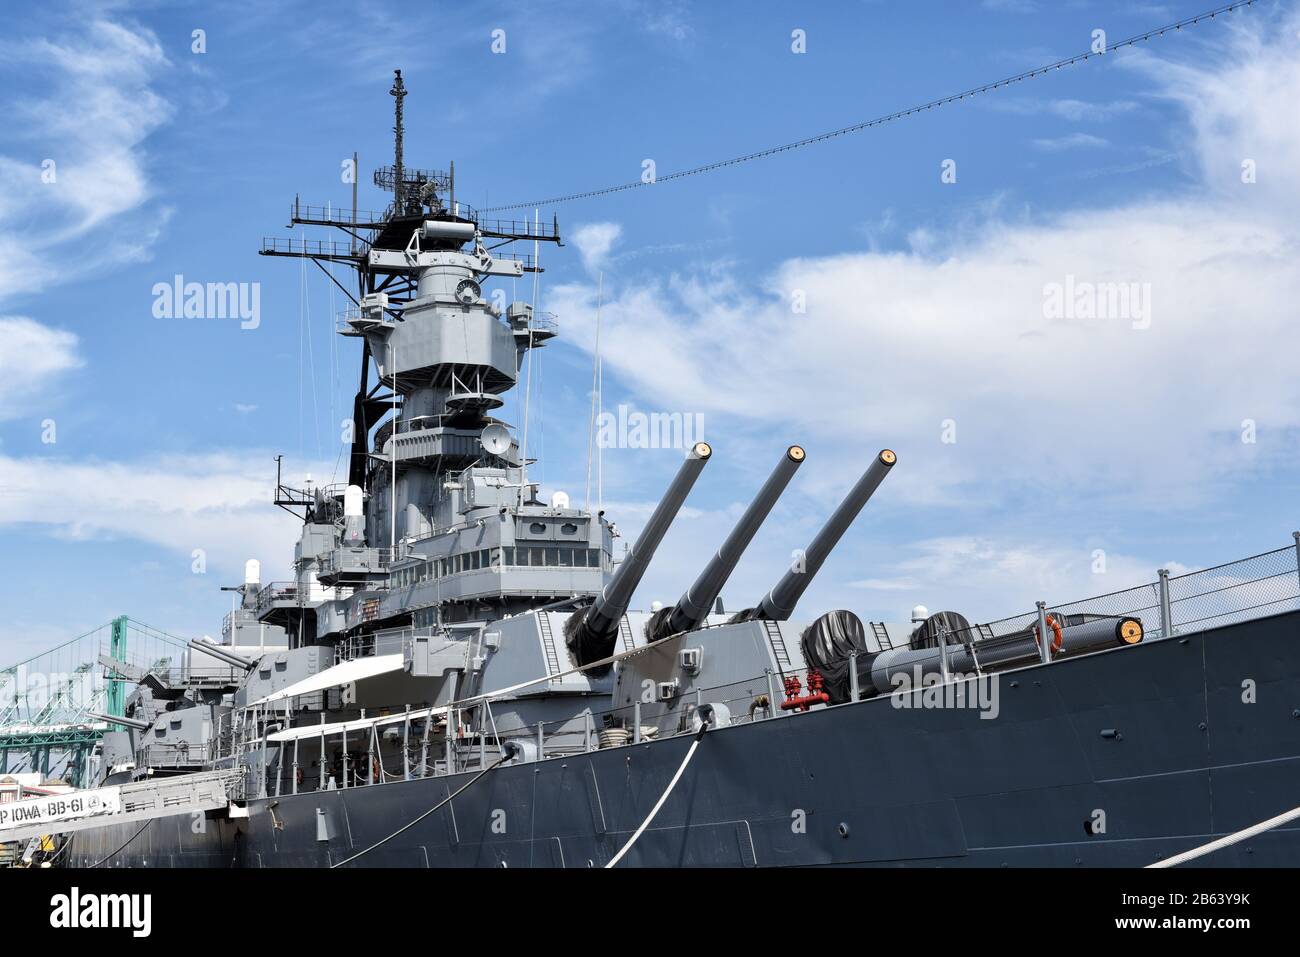 Los ANGELES, KALIFORNIEN - 06. März 2020: USS Iowa, ein Schlachtschiff aus dem zweiten Weltkrieg, das jetzt außer Dienst gestellt wurde, und ein Maritime Museum im Hafen von Los Angeles. Stockfoto